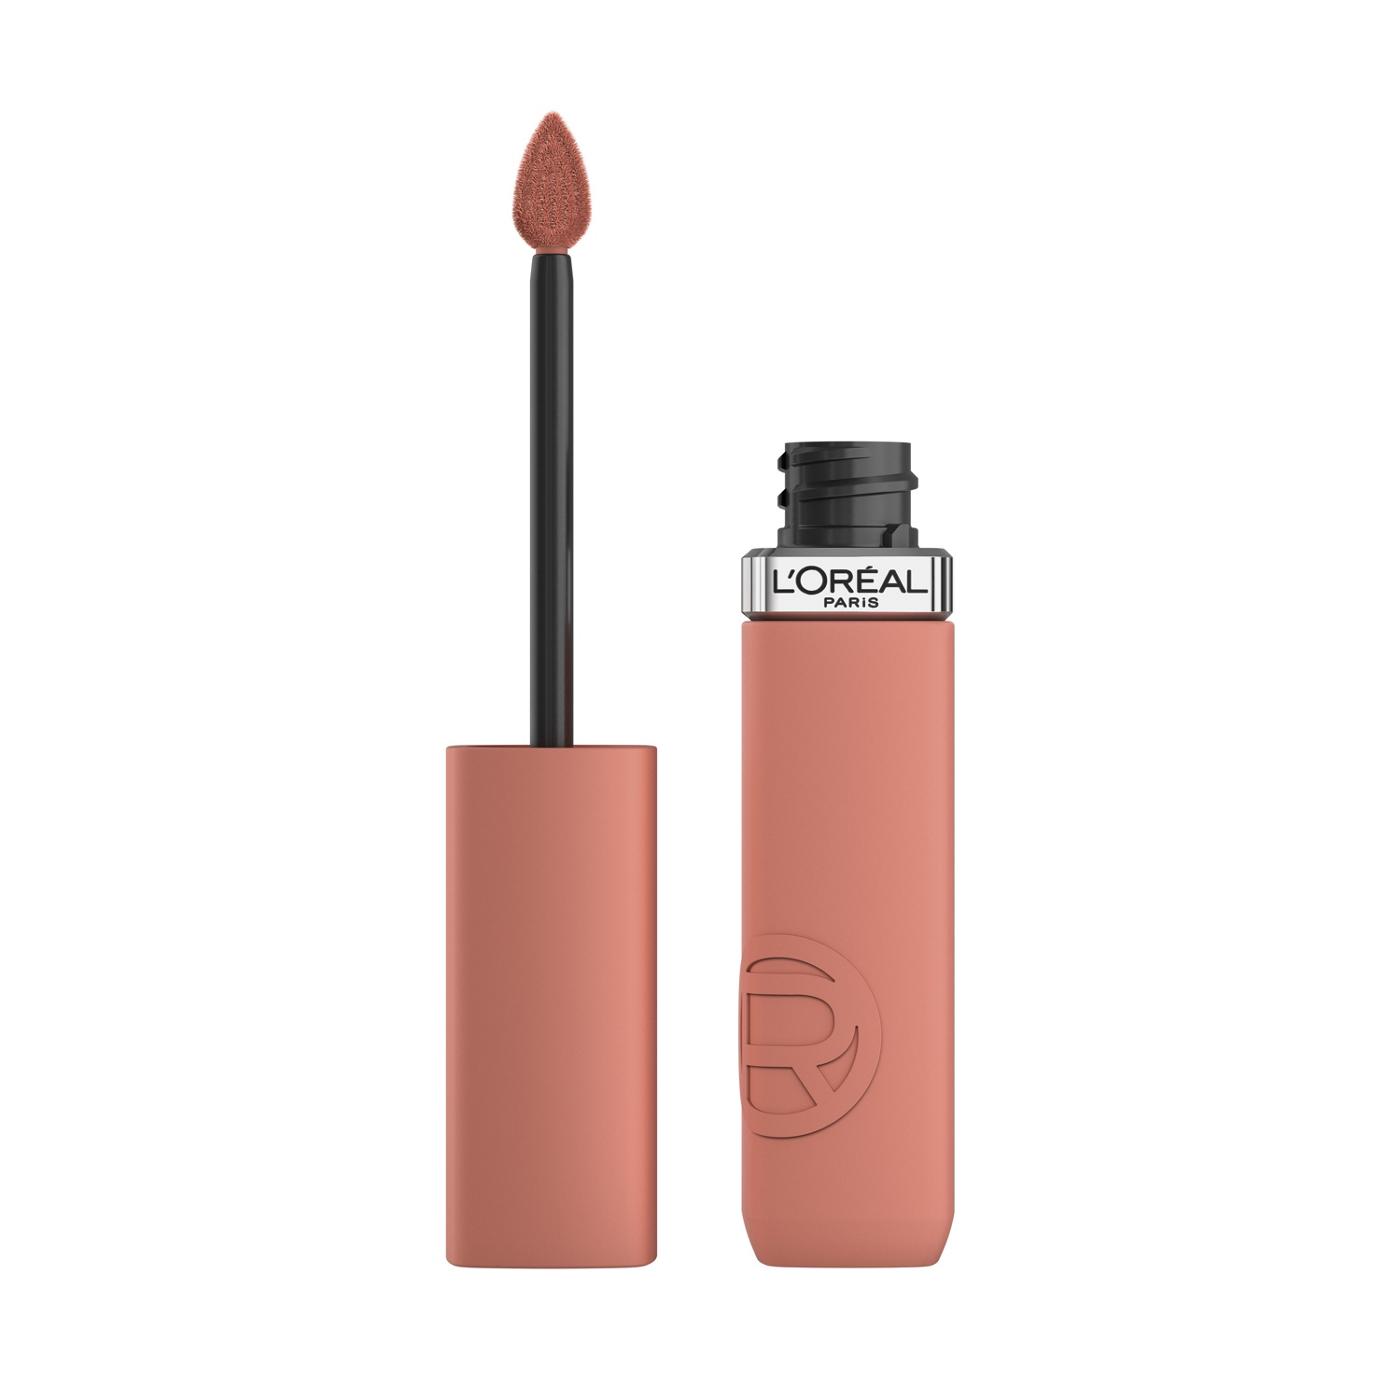 L'Oréal Paris Infallible Le Matte Resistance Liquid Lipstick - Worth It; image 1 of 6